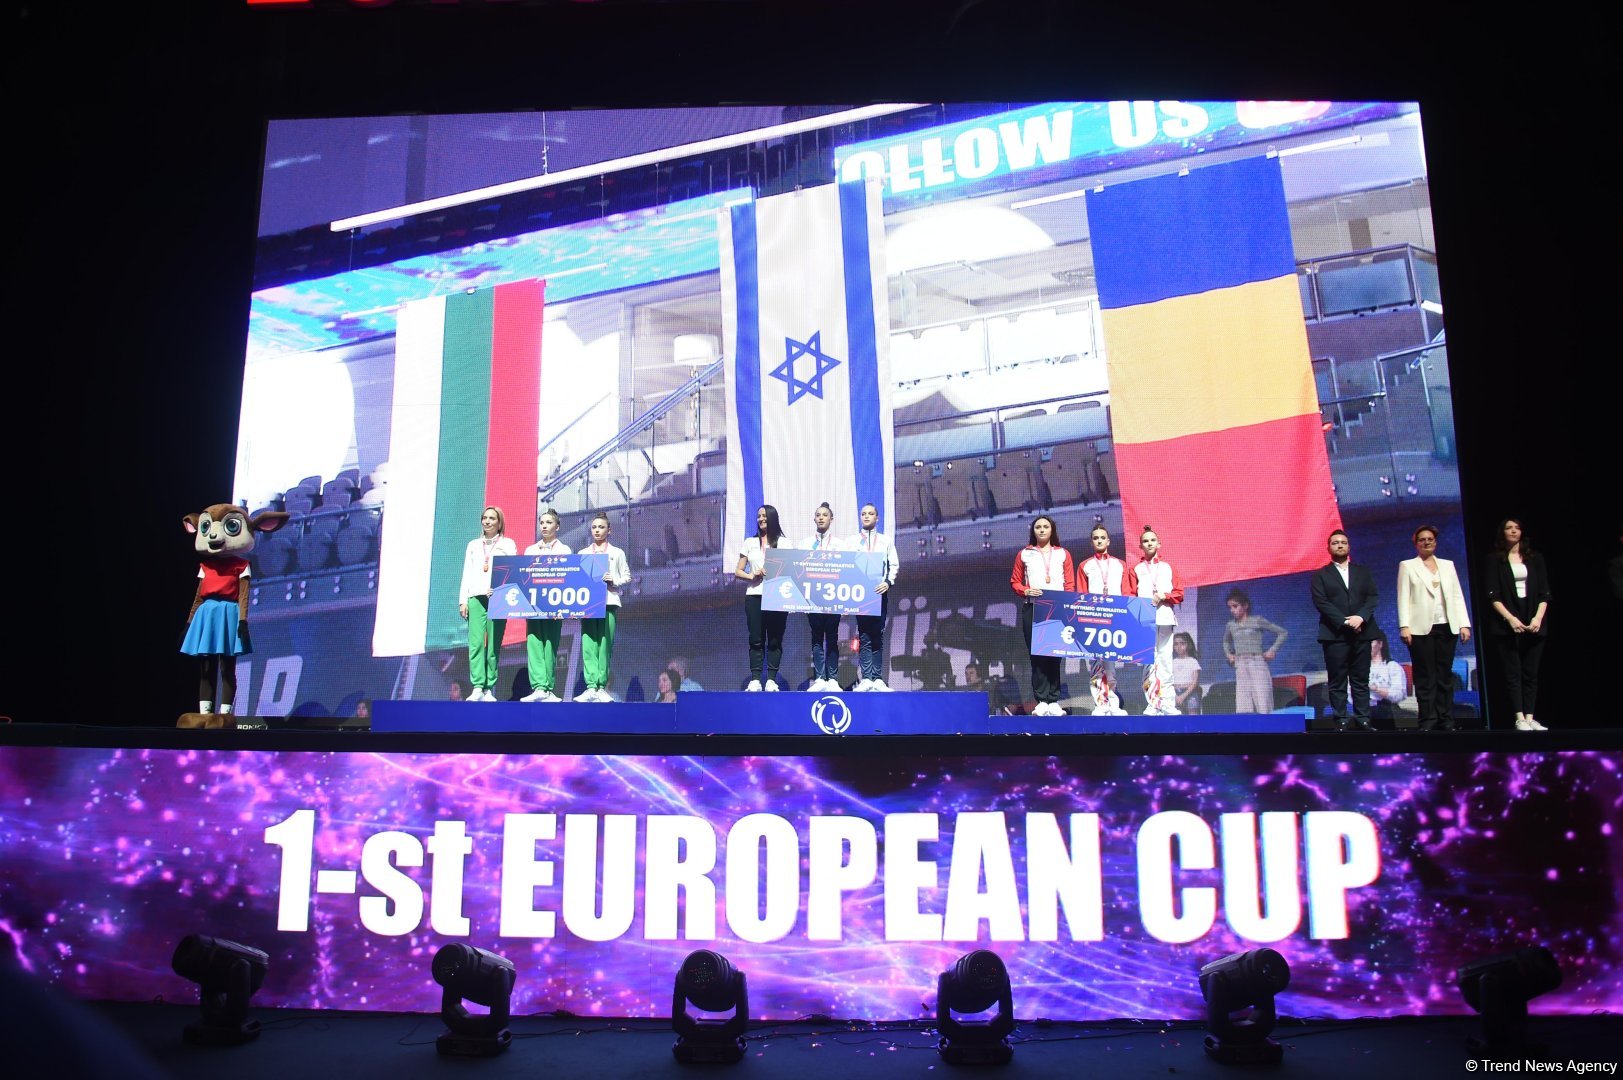 Кубок Европы в Баку: церемония награждения победителей в командном зачете (ФОТО)